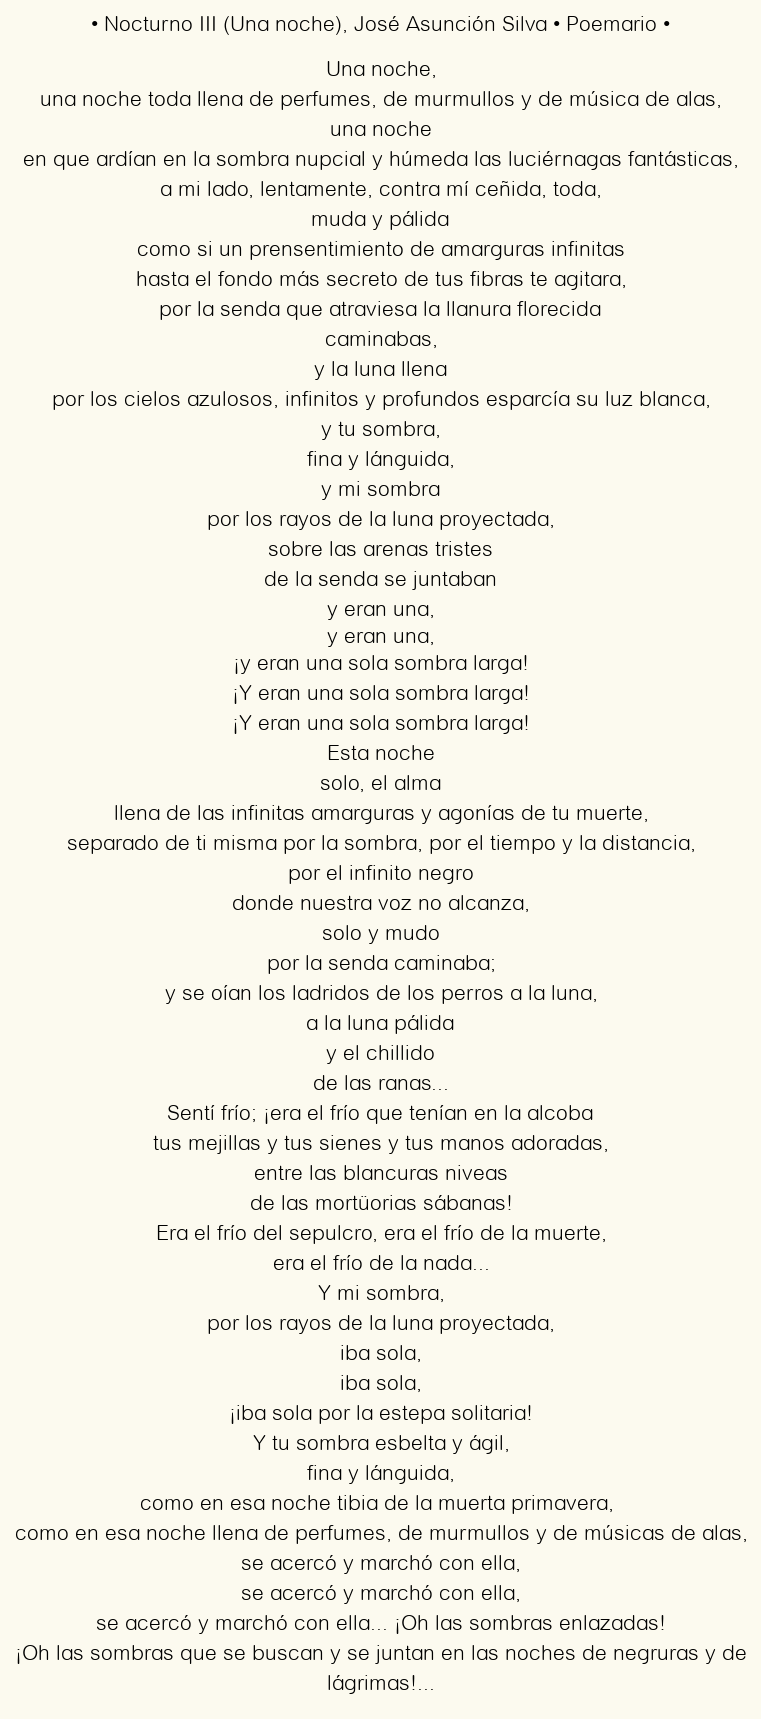 Imagen con el poema Nocturno III (Una noche), por José Asunción Silva